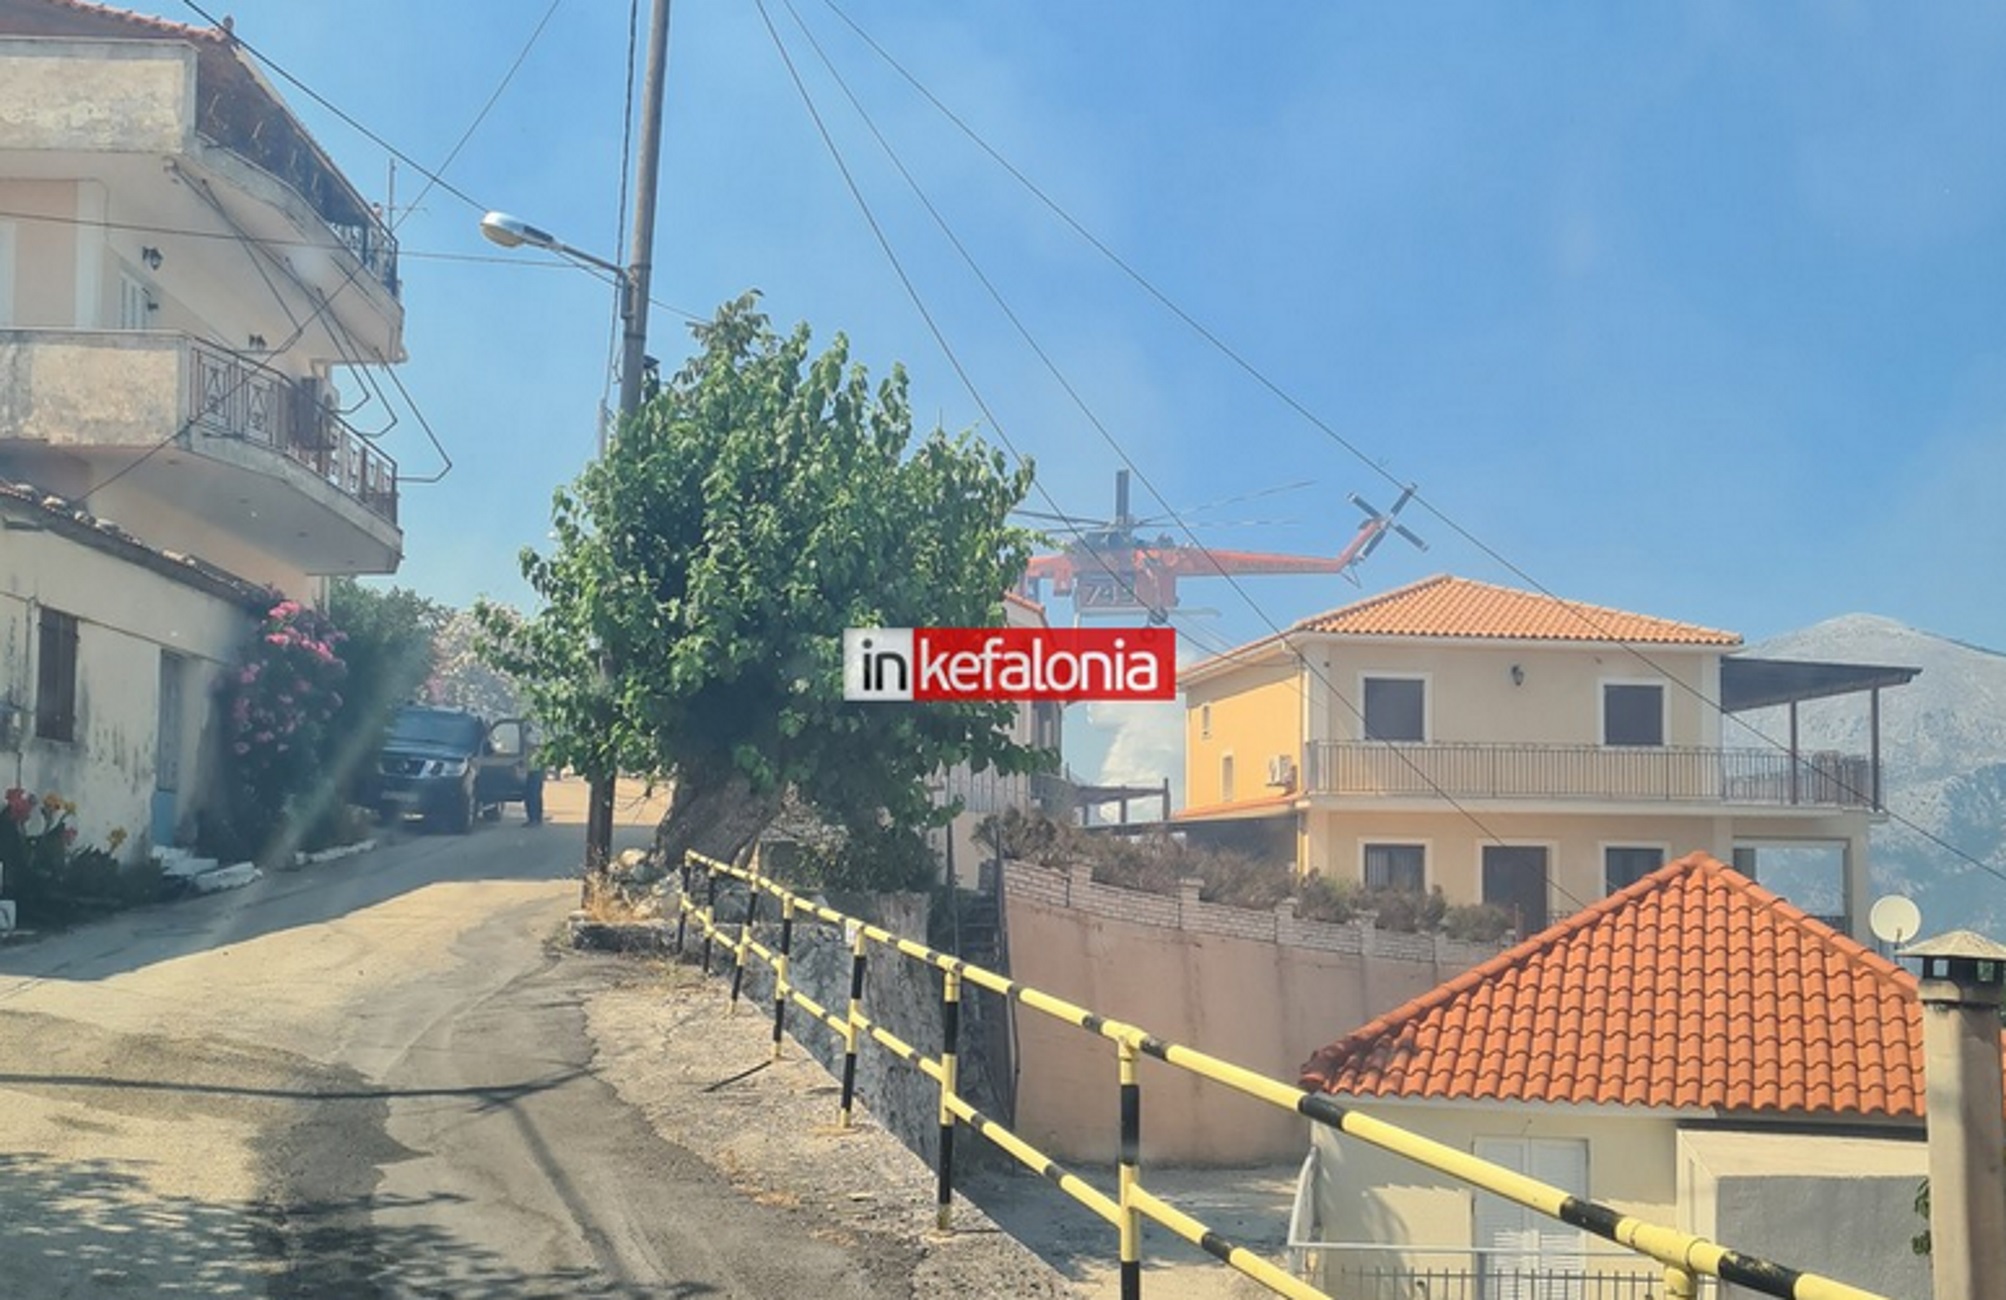 Κεφαλονιά: Απομακρύνονται οι κάτοικοι από την περιοχή Καπανδρίτι λόγω της πυρκαγιάς η οποία μπήκε στο χωριό τώρα  (βίντεο)